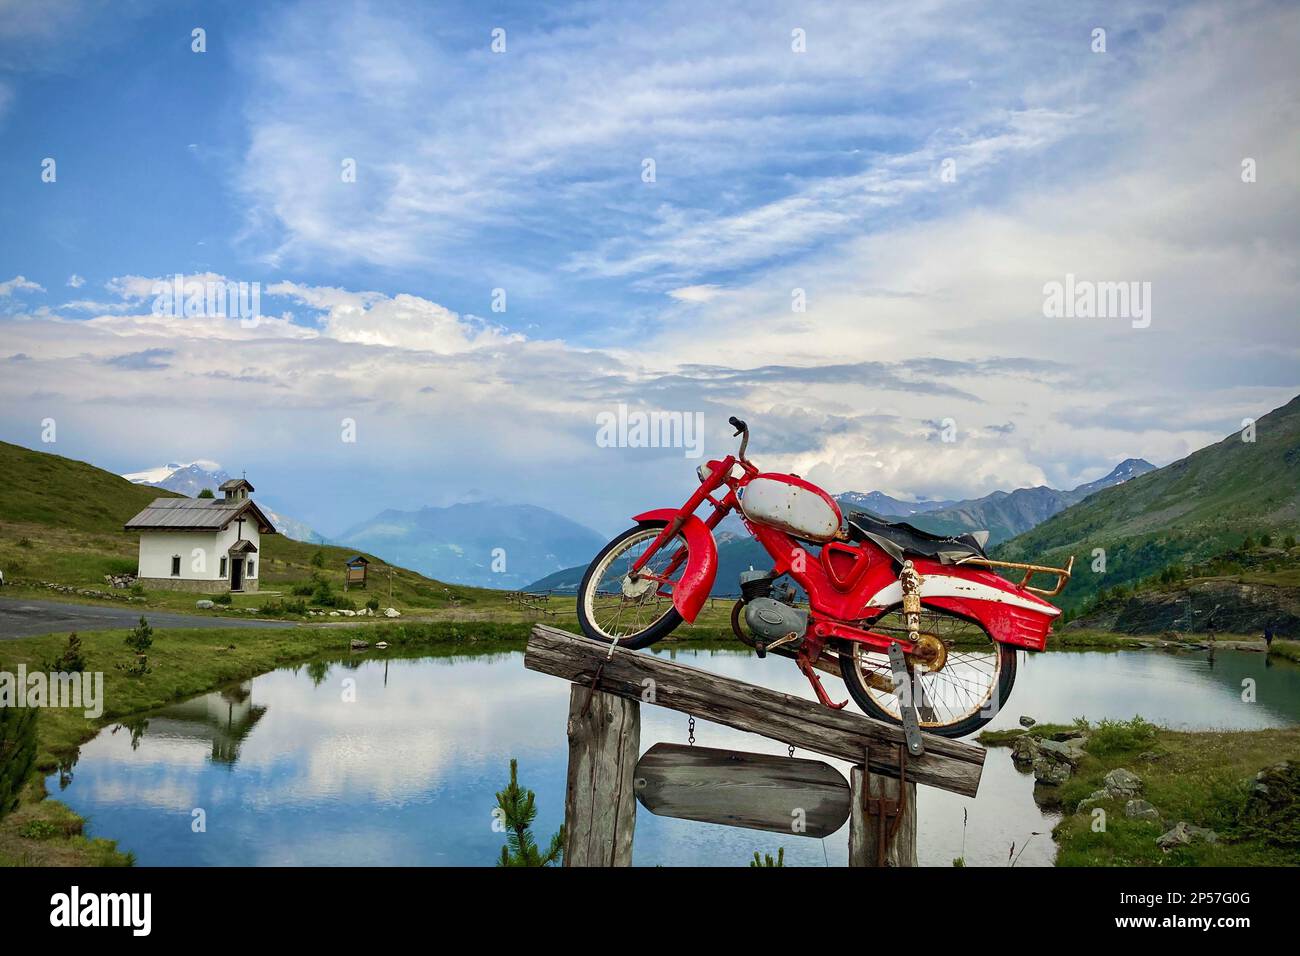 Vieille moto sur un podium en bois, le fond est le ciel bleu avec des nuages. Livigno, Alpes, Italie Banque D'Images